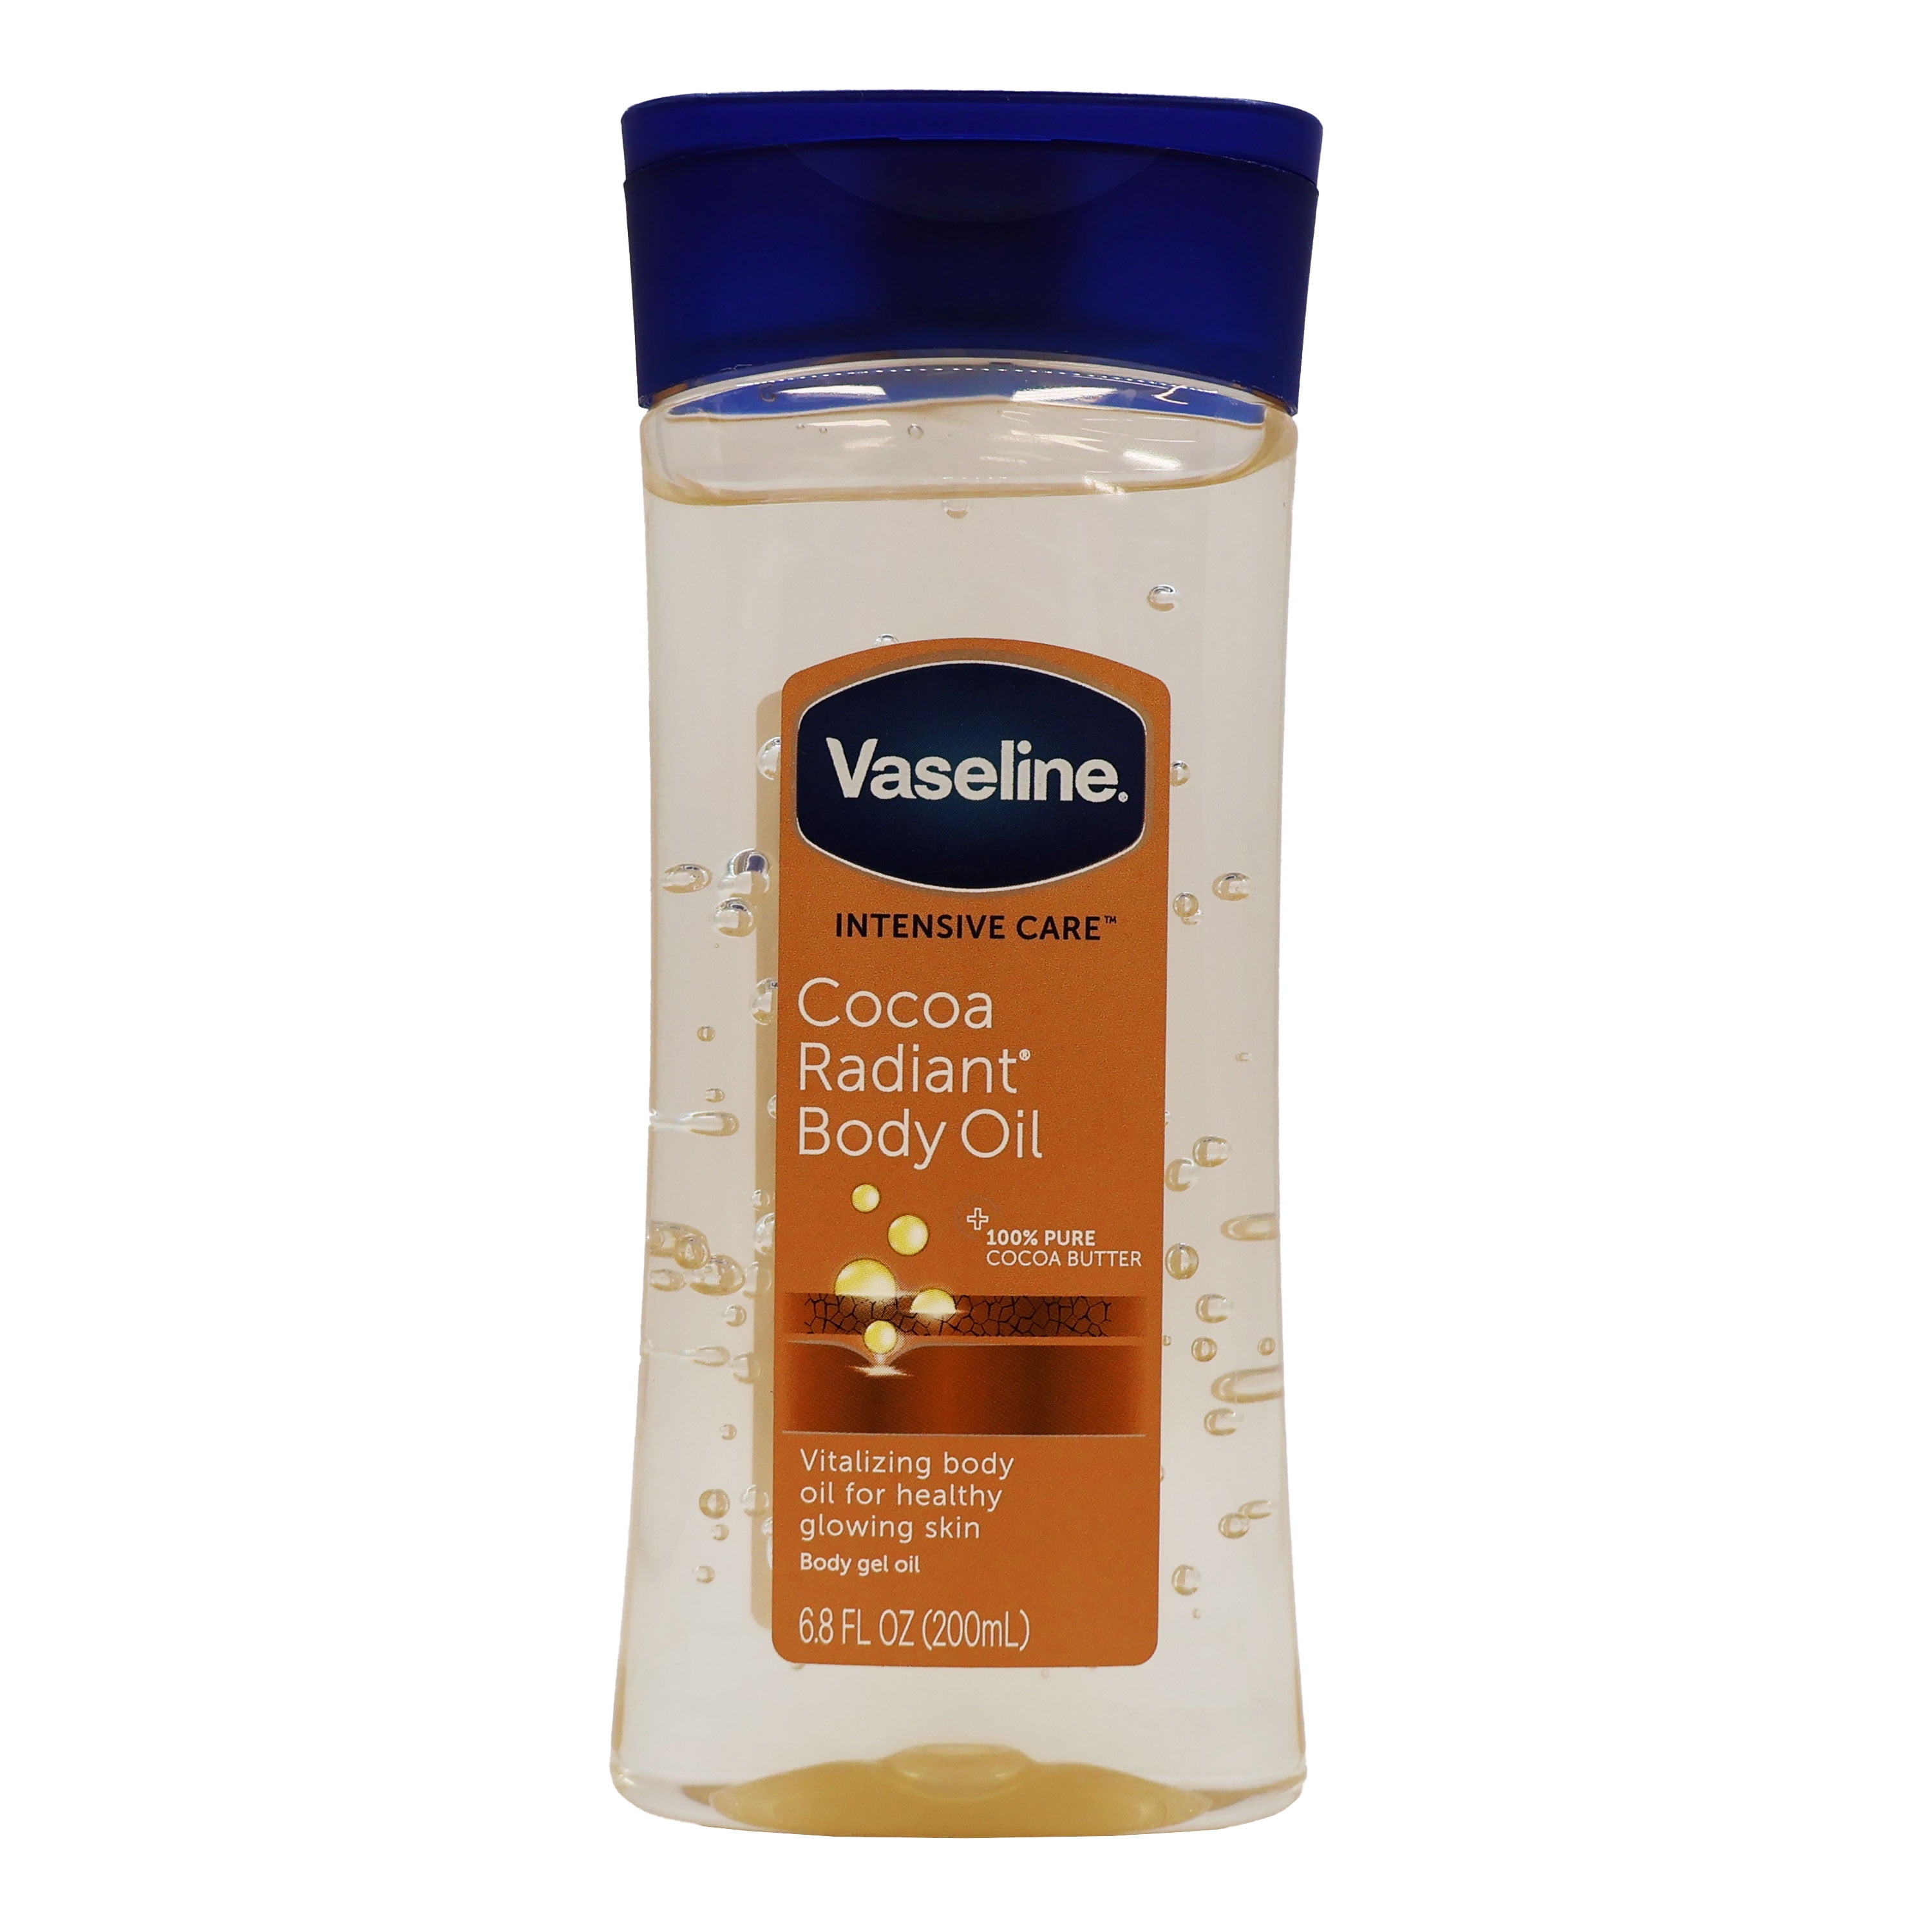 Vaseline Intensive Care Cocoa Radiant Body Gel Oil, 6.8 oz - 2